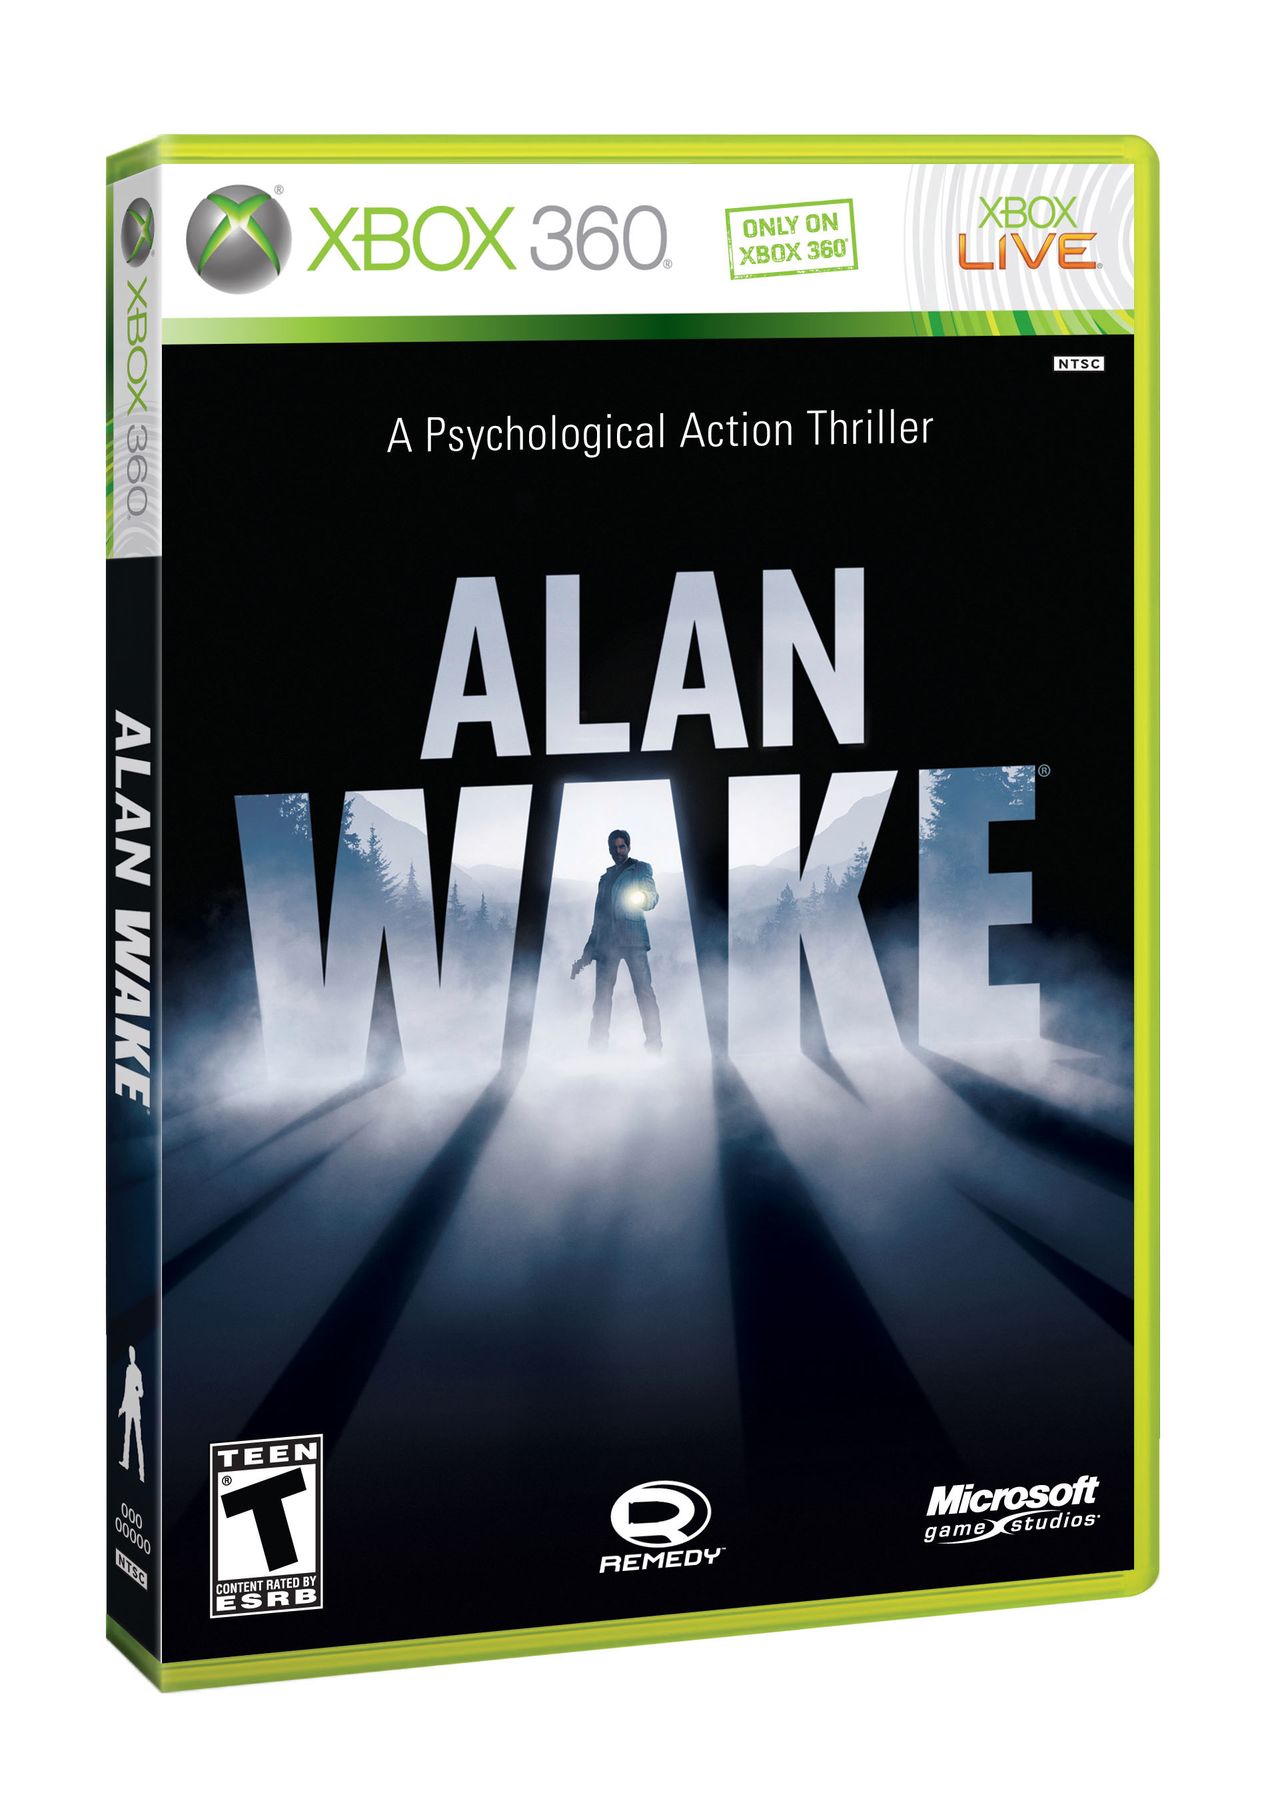 Znamy cenę i zawartość edycji kolekcjonerskiej Alana Wake